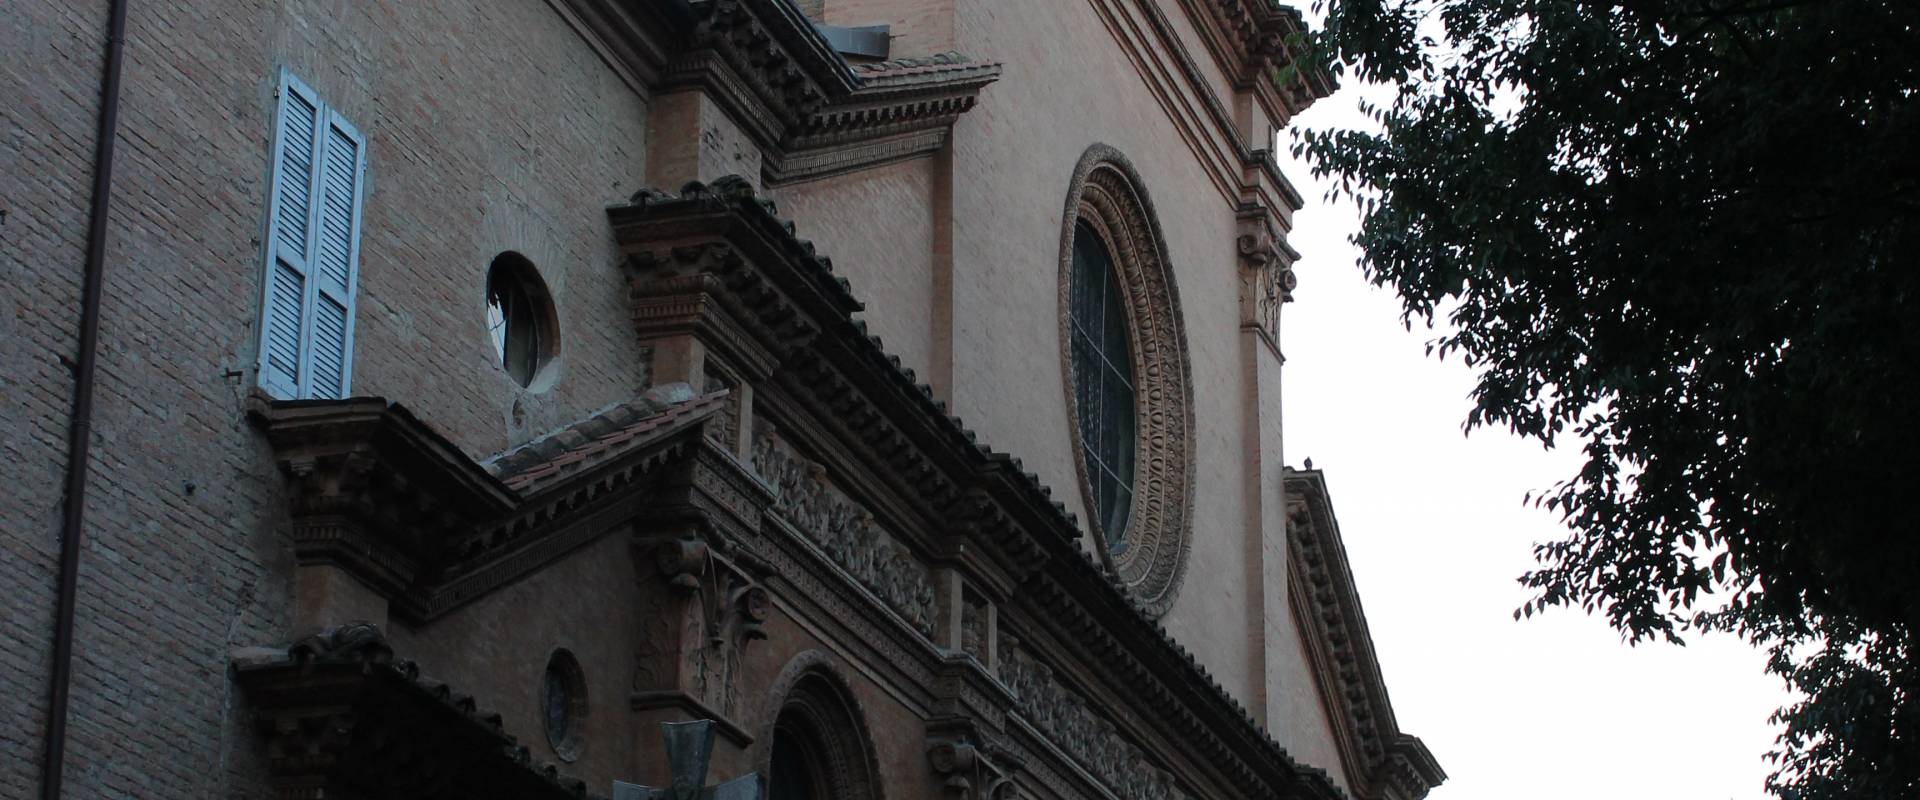 Chiesa di San Pietro Modena foto di BeaDominianni